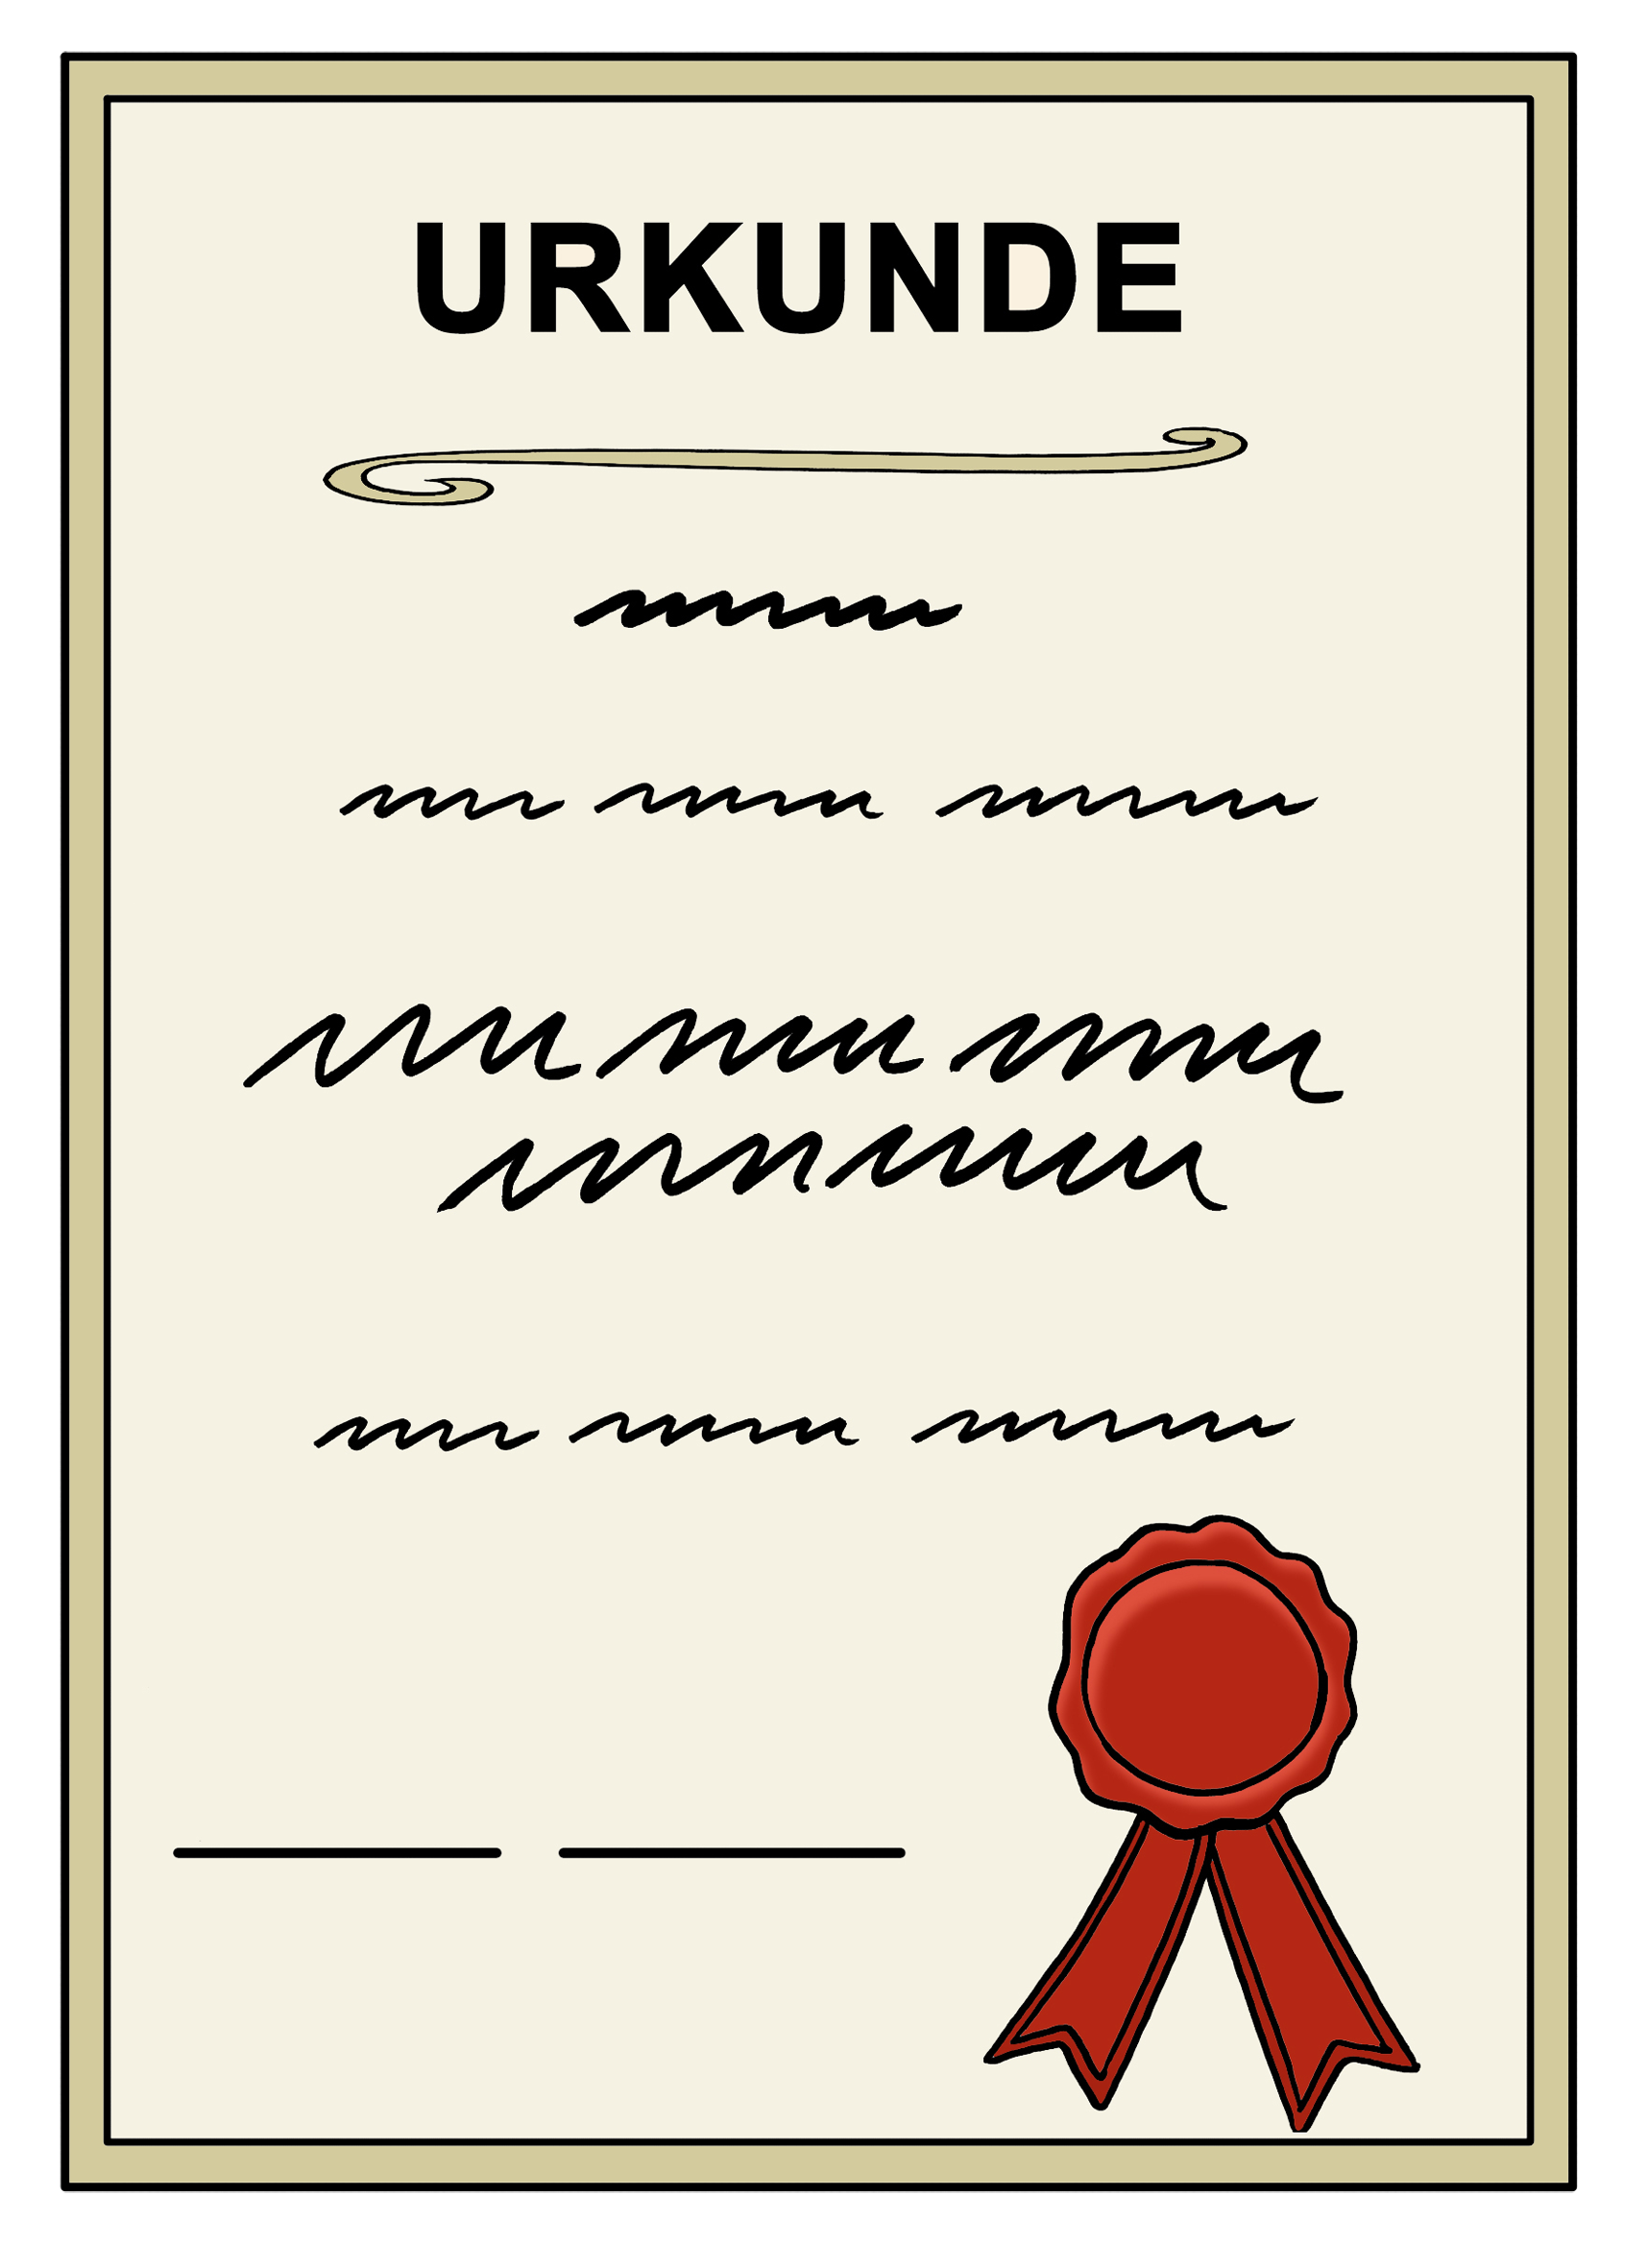 Leichte Sprache Bild: eine stilisierte Urkunde